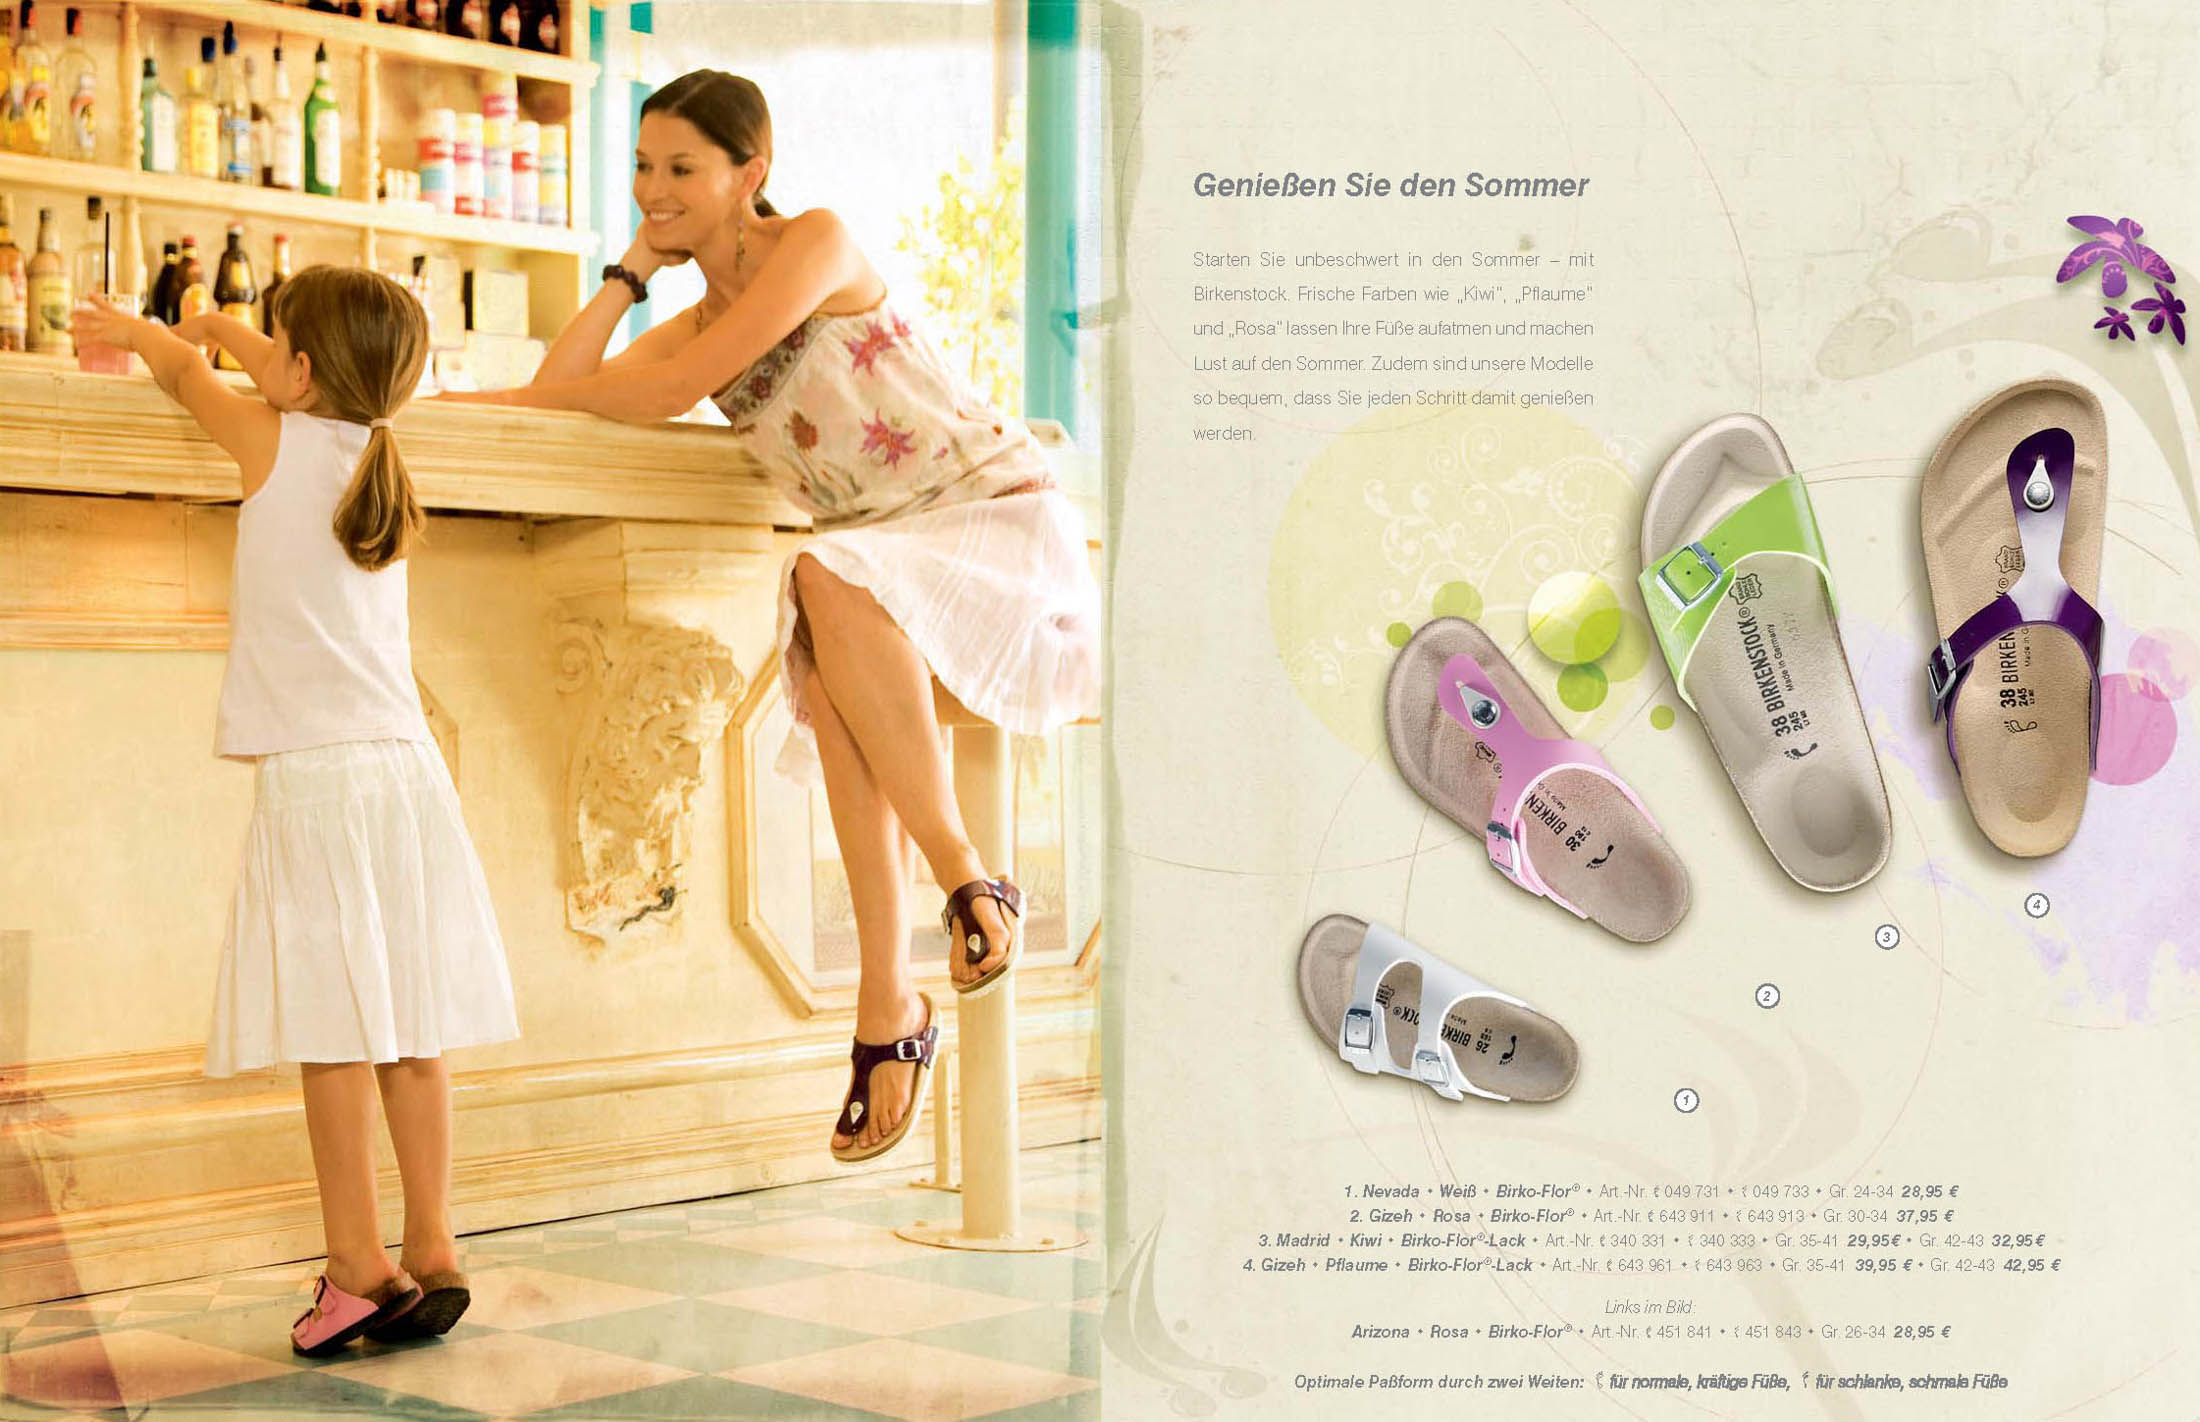 Eine Mutter und ihre Tochter unterhalten sich im Sommer fröhlich an einem Imbiss. Eine Anzeige mit Schuhbildern und -beschreibungen überlagert einen Teil des Bildes und vermittelt so ein leichtes, sommerliches Gefühl. © Fotografie Tomas Rodriguez